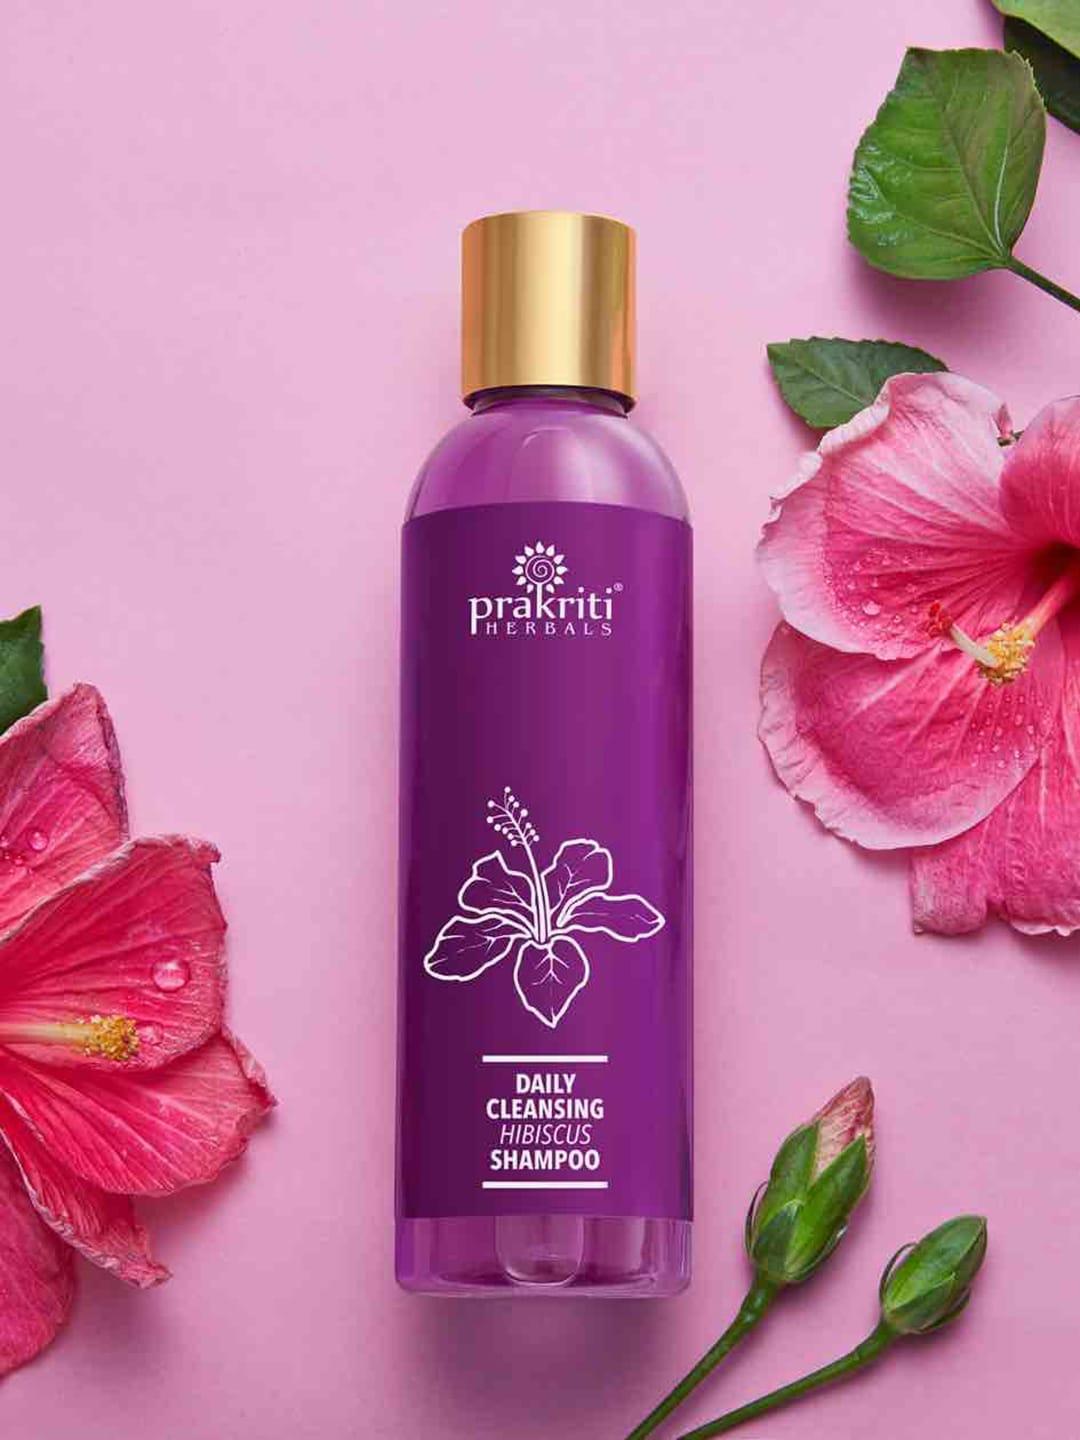 Prakriti Herbals Daily Cleansing Hibiscus Shampoo - 120ml